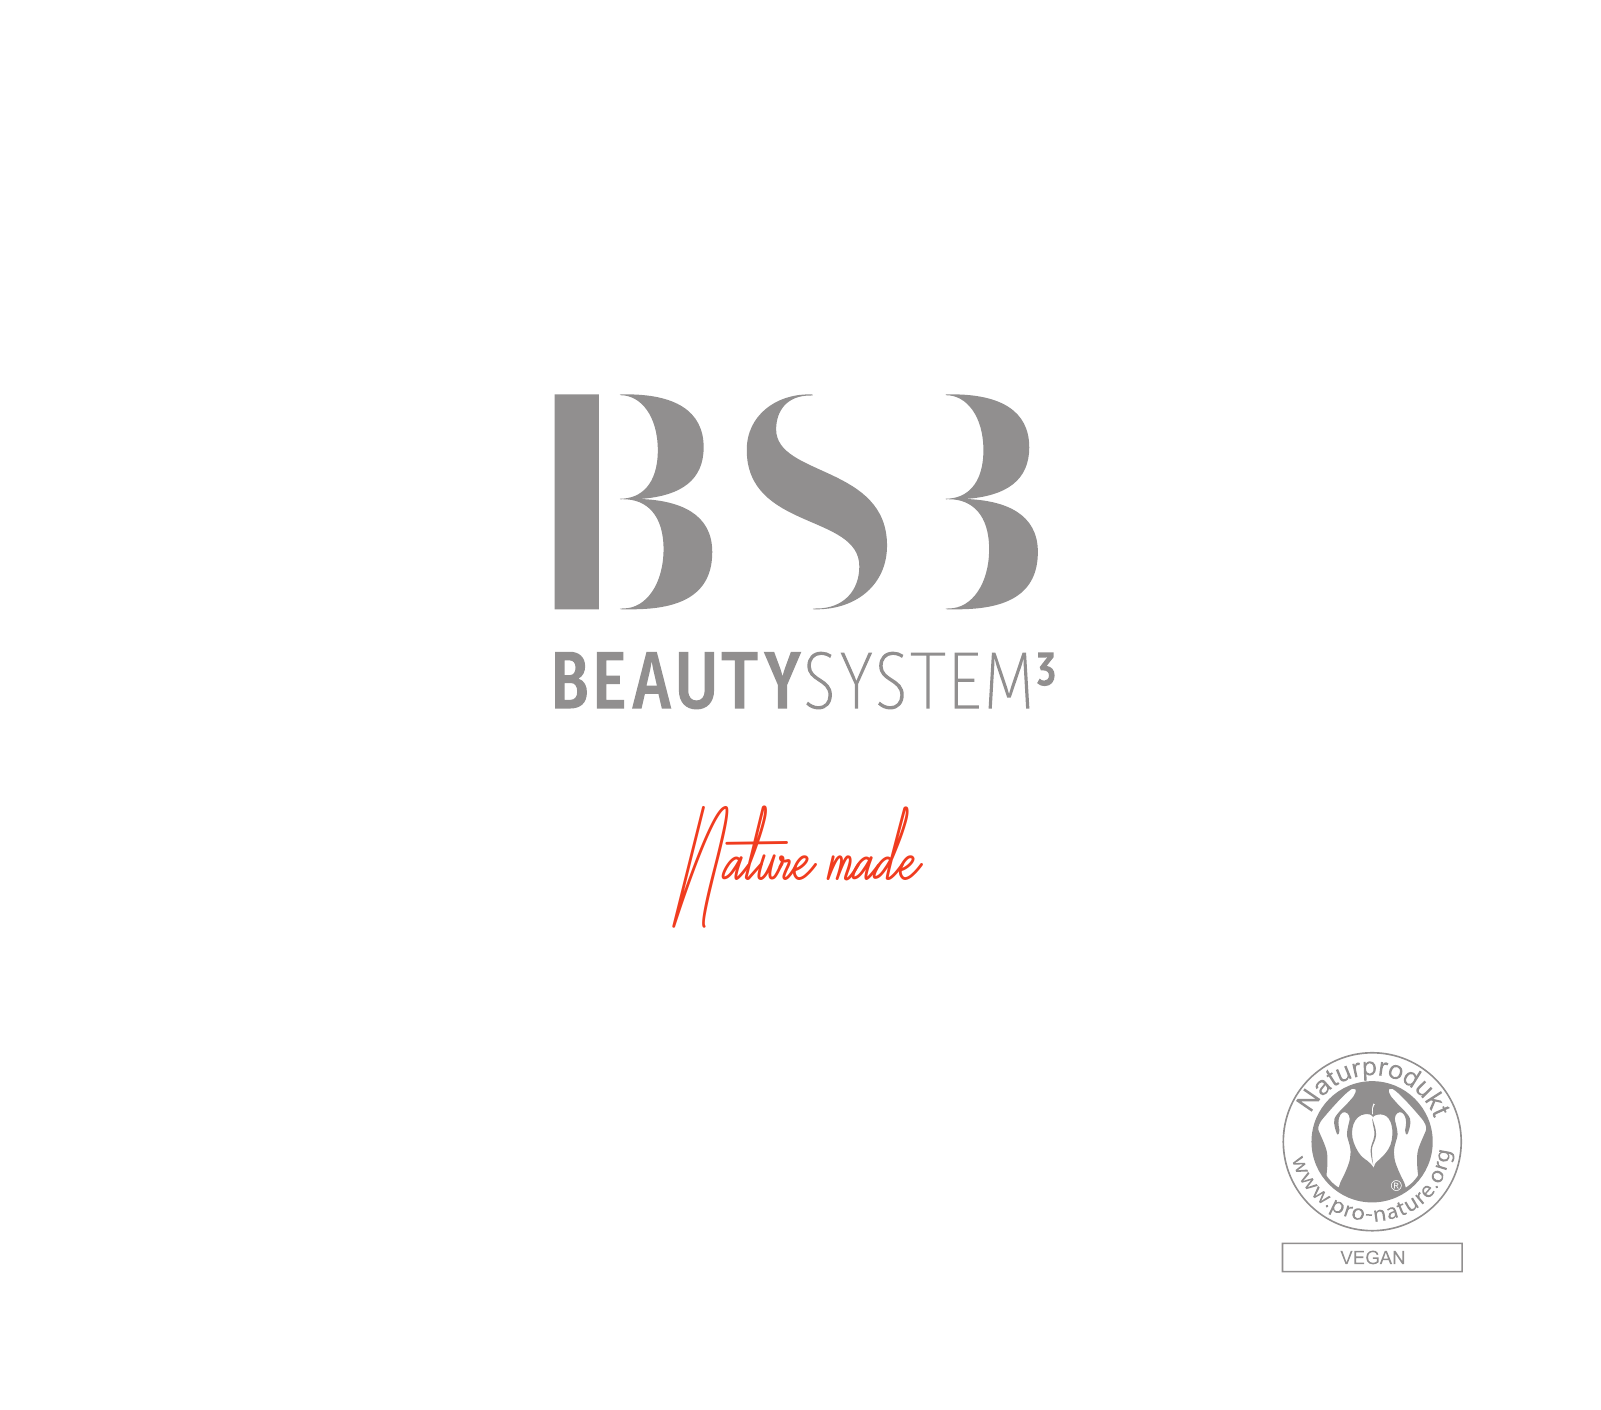 Vorschau BeautySystem Skin Care Seite 1